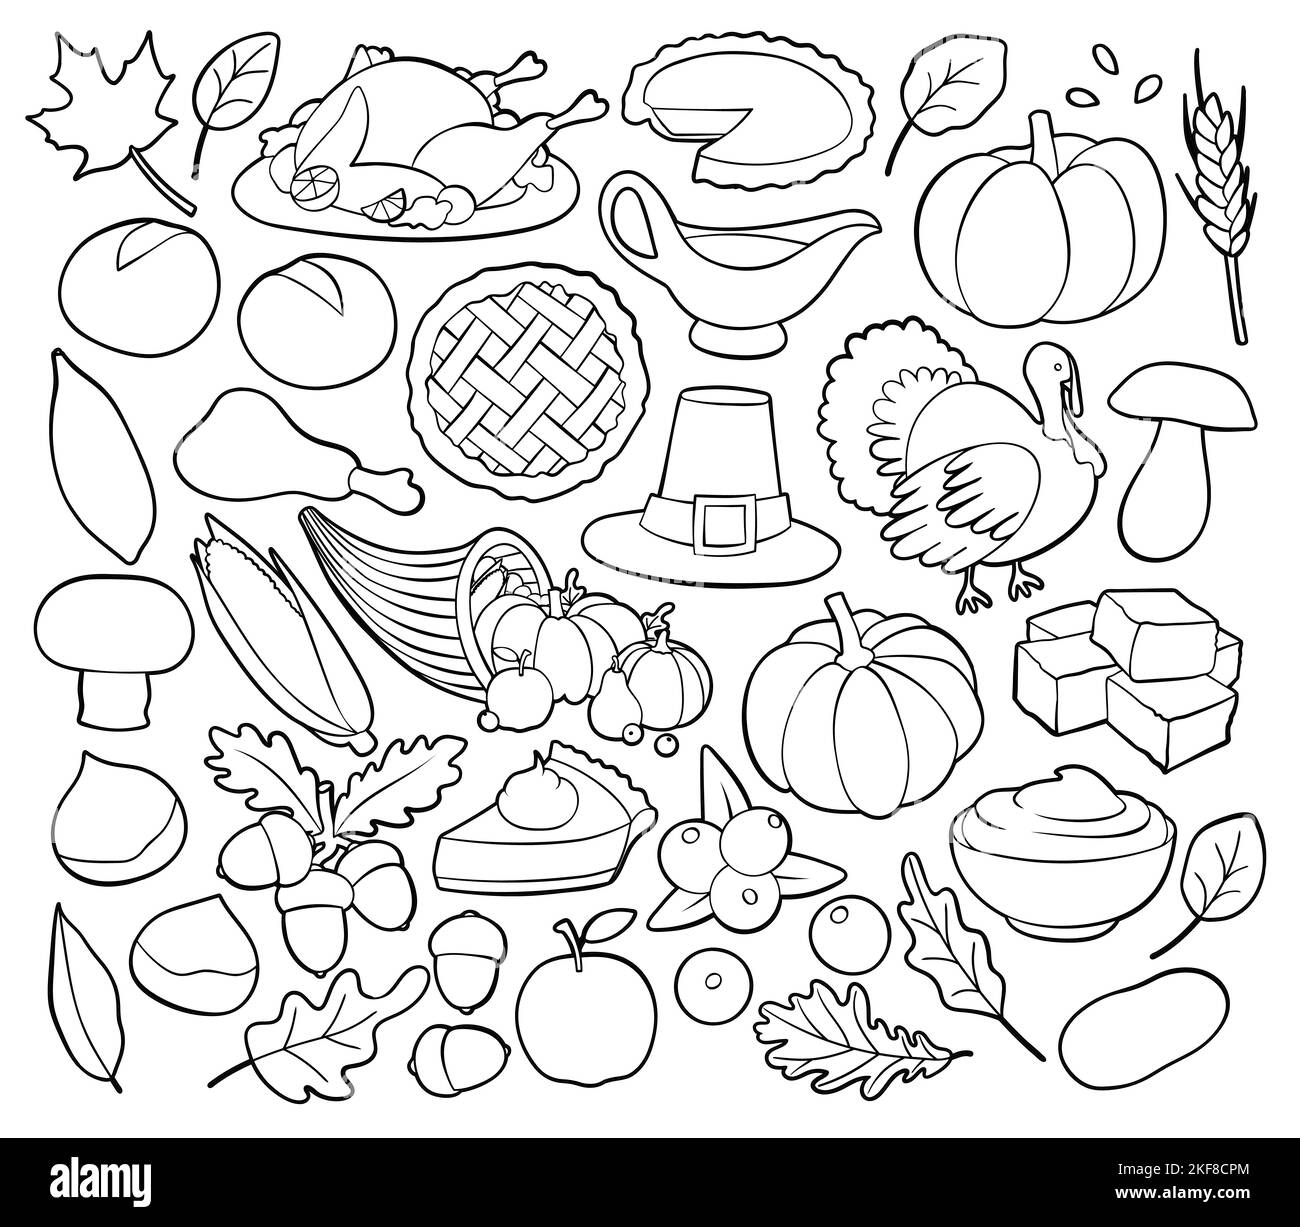 Thanksgiving Feiertagsfeier im Zusammenhang Dinge und Objekte. Sammlung von handgezeichneten, Vektor-Cartoon-Illustrationen. Stock Vektor